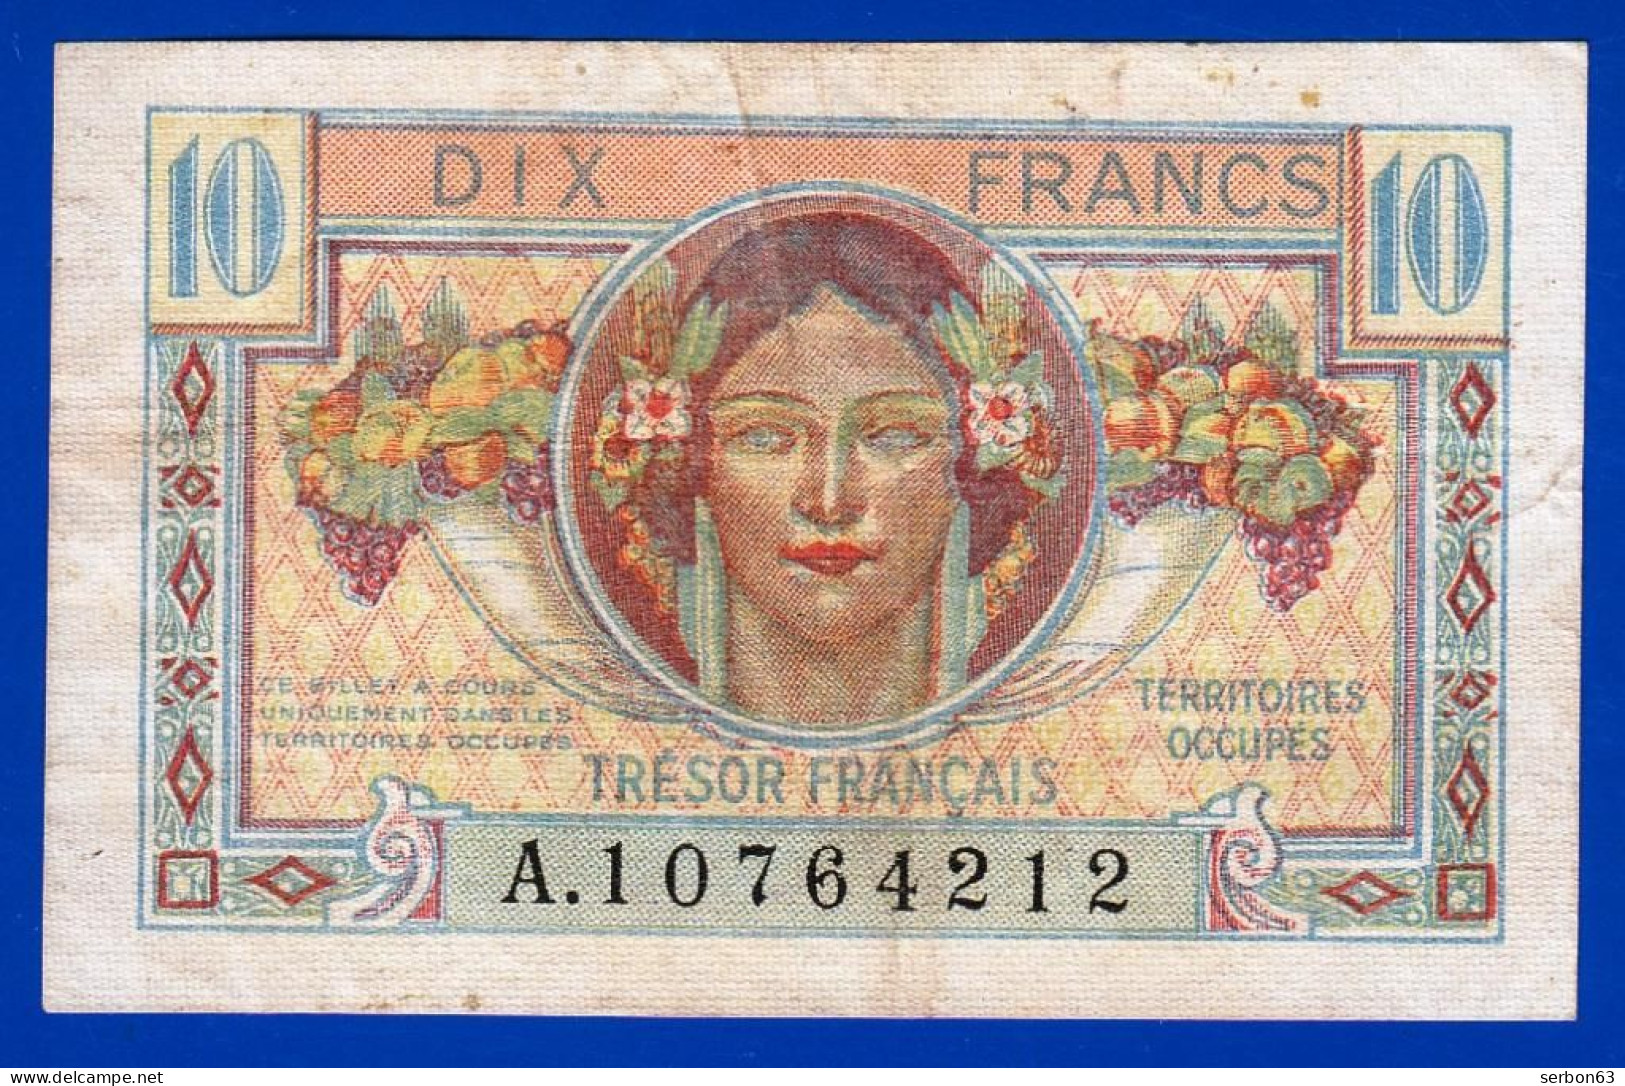 10 FRANCS BILLET DU TRÉSOR FRANÇAIS EMISSION POUR LES TERRITOIRES OCCUPES 1947 A. 10764212 Serbon63 - 1947 French Treasury